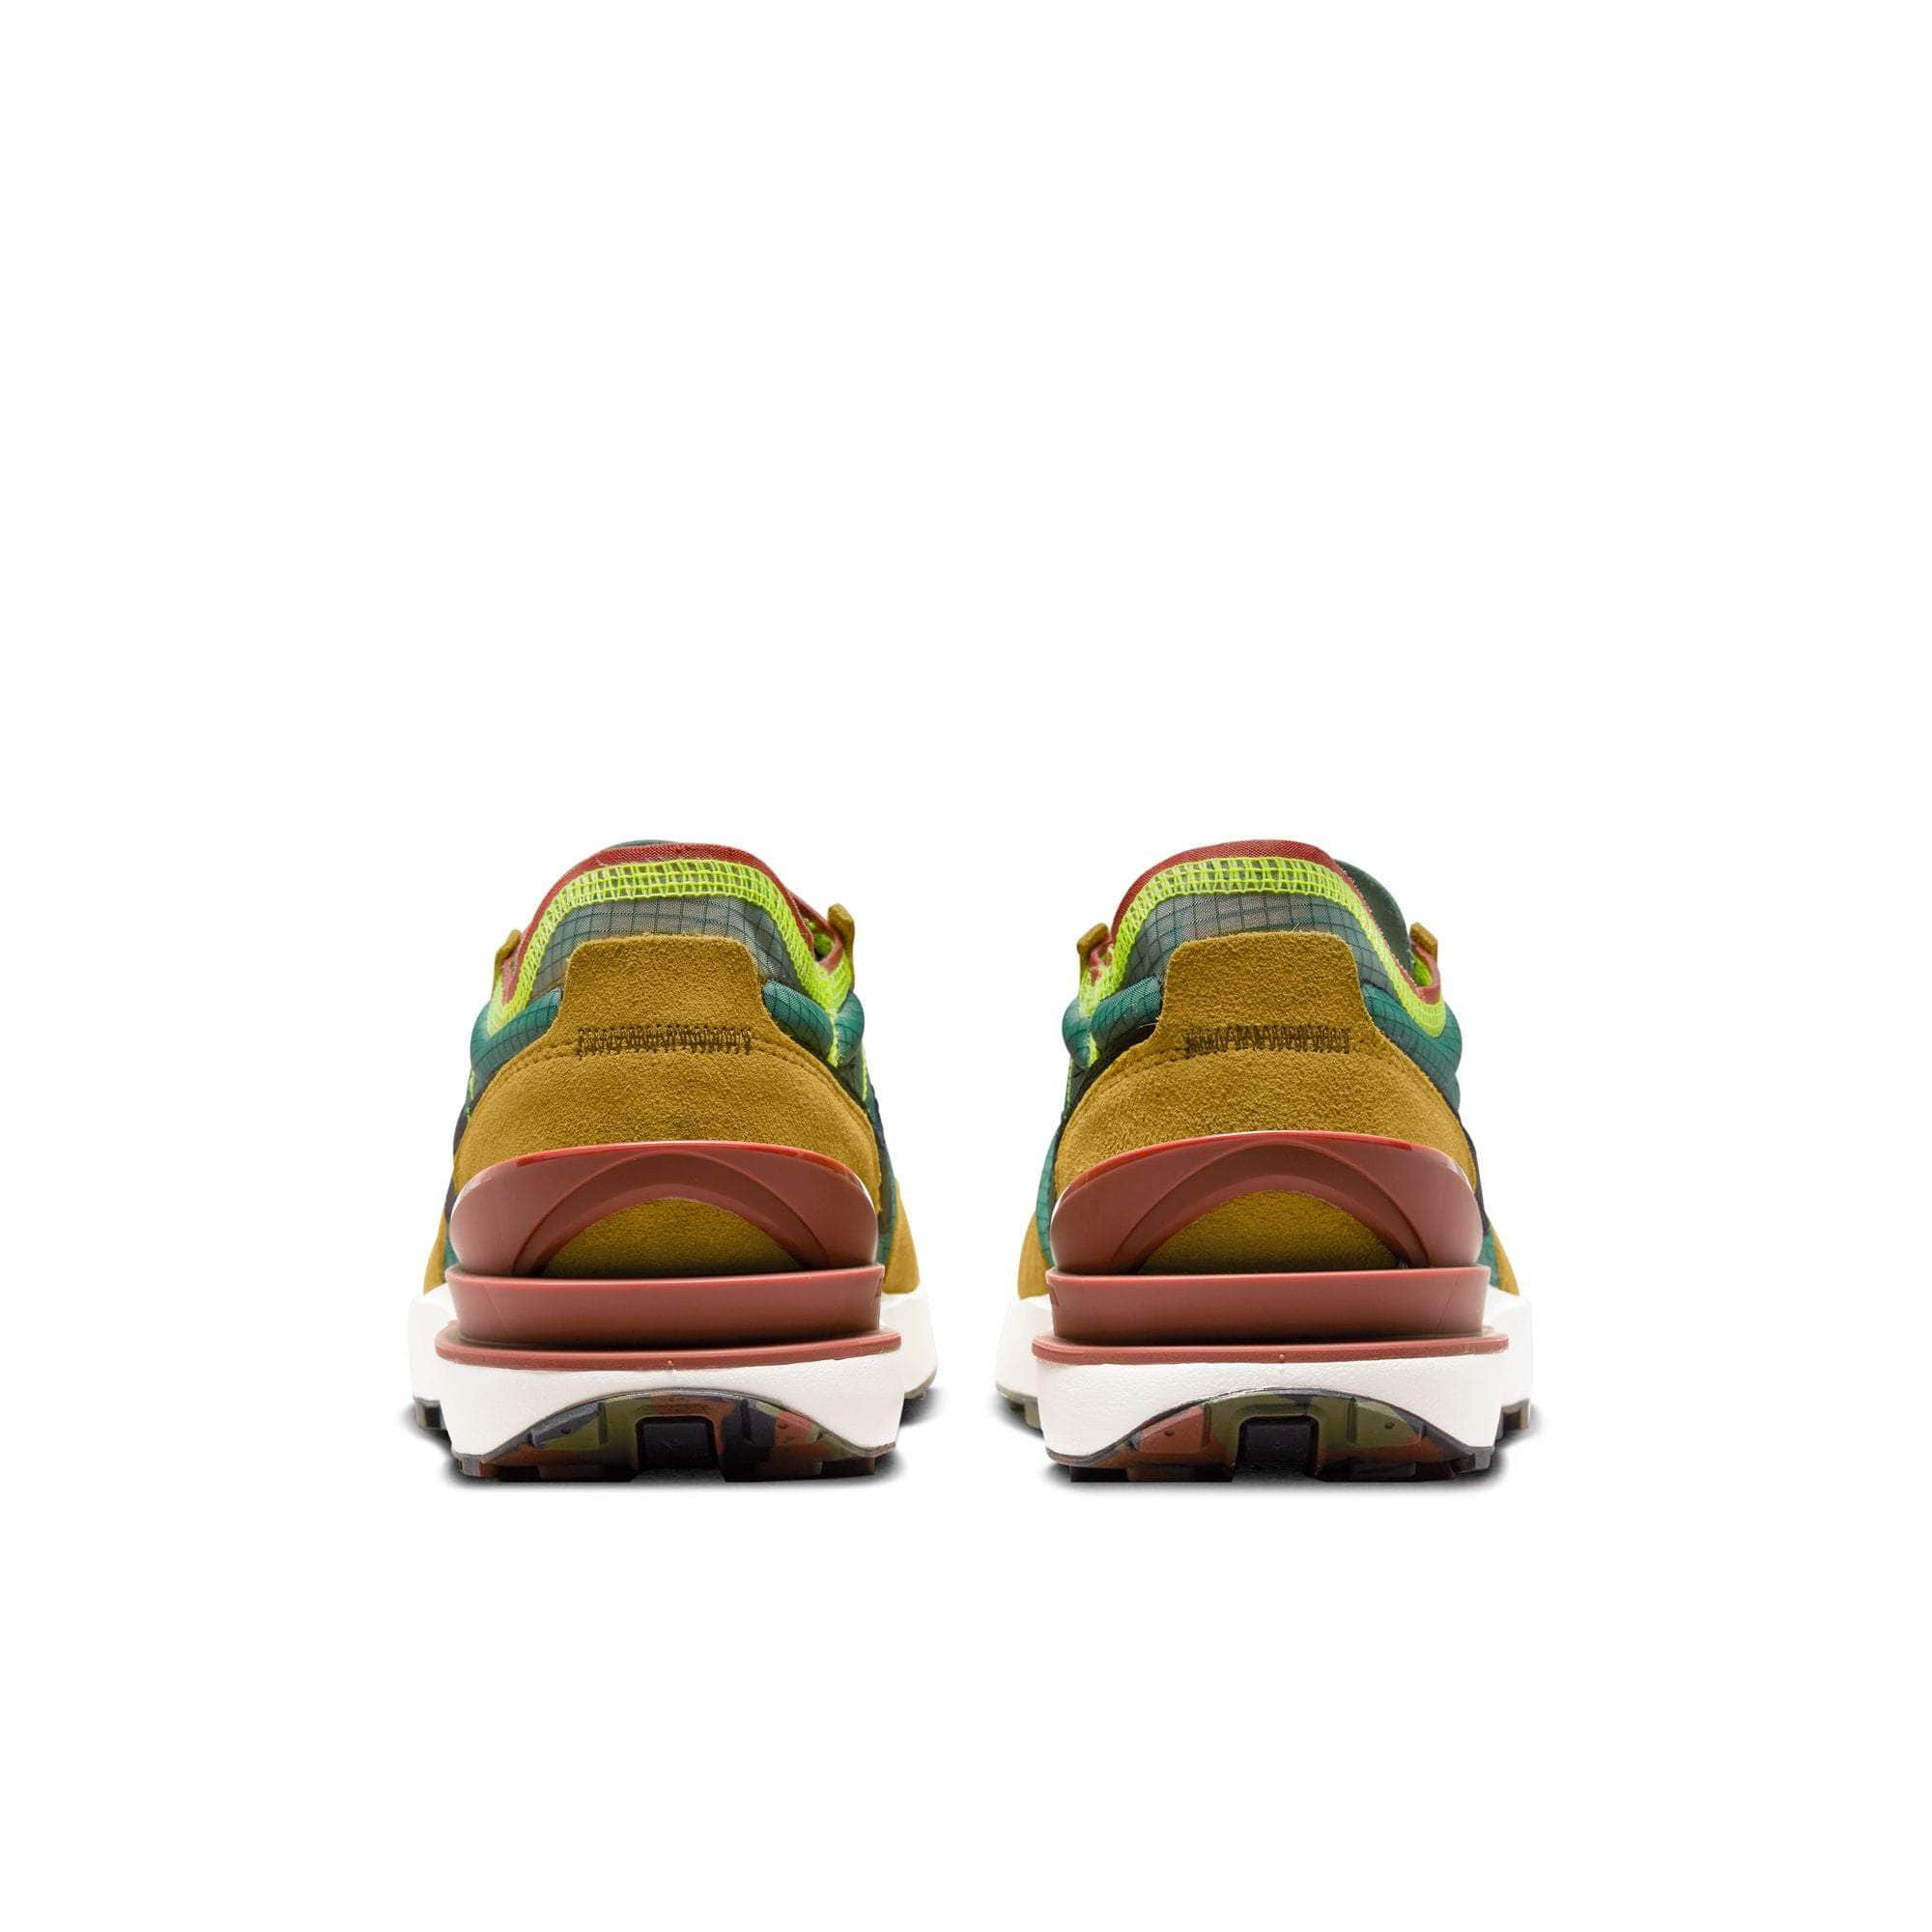 NIKE FOOTWEAR Nike Waffle One SE "CAMO SOLES - GOLDEN MOSS" - Men's